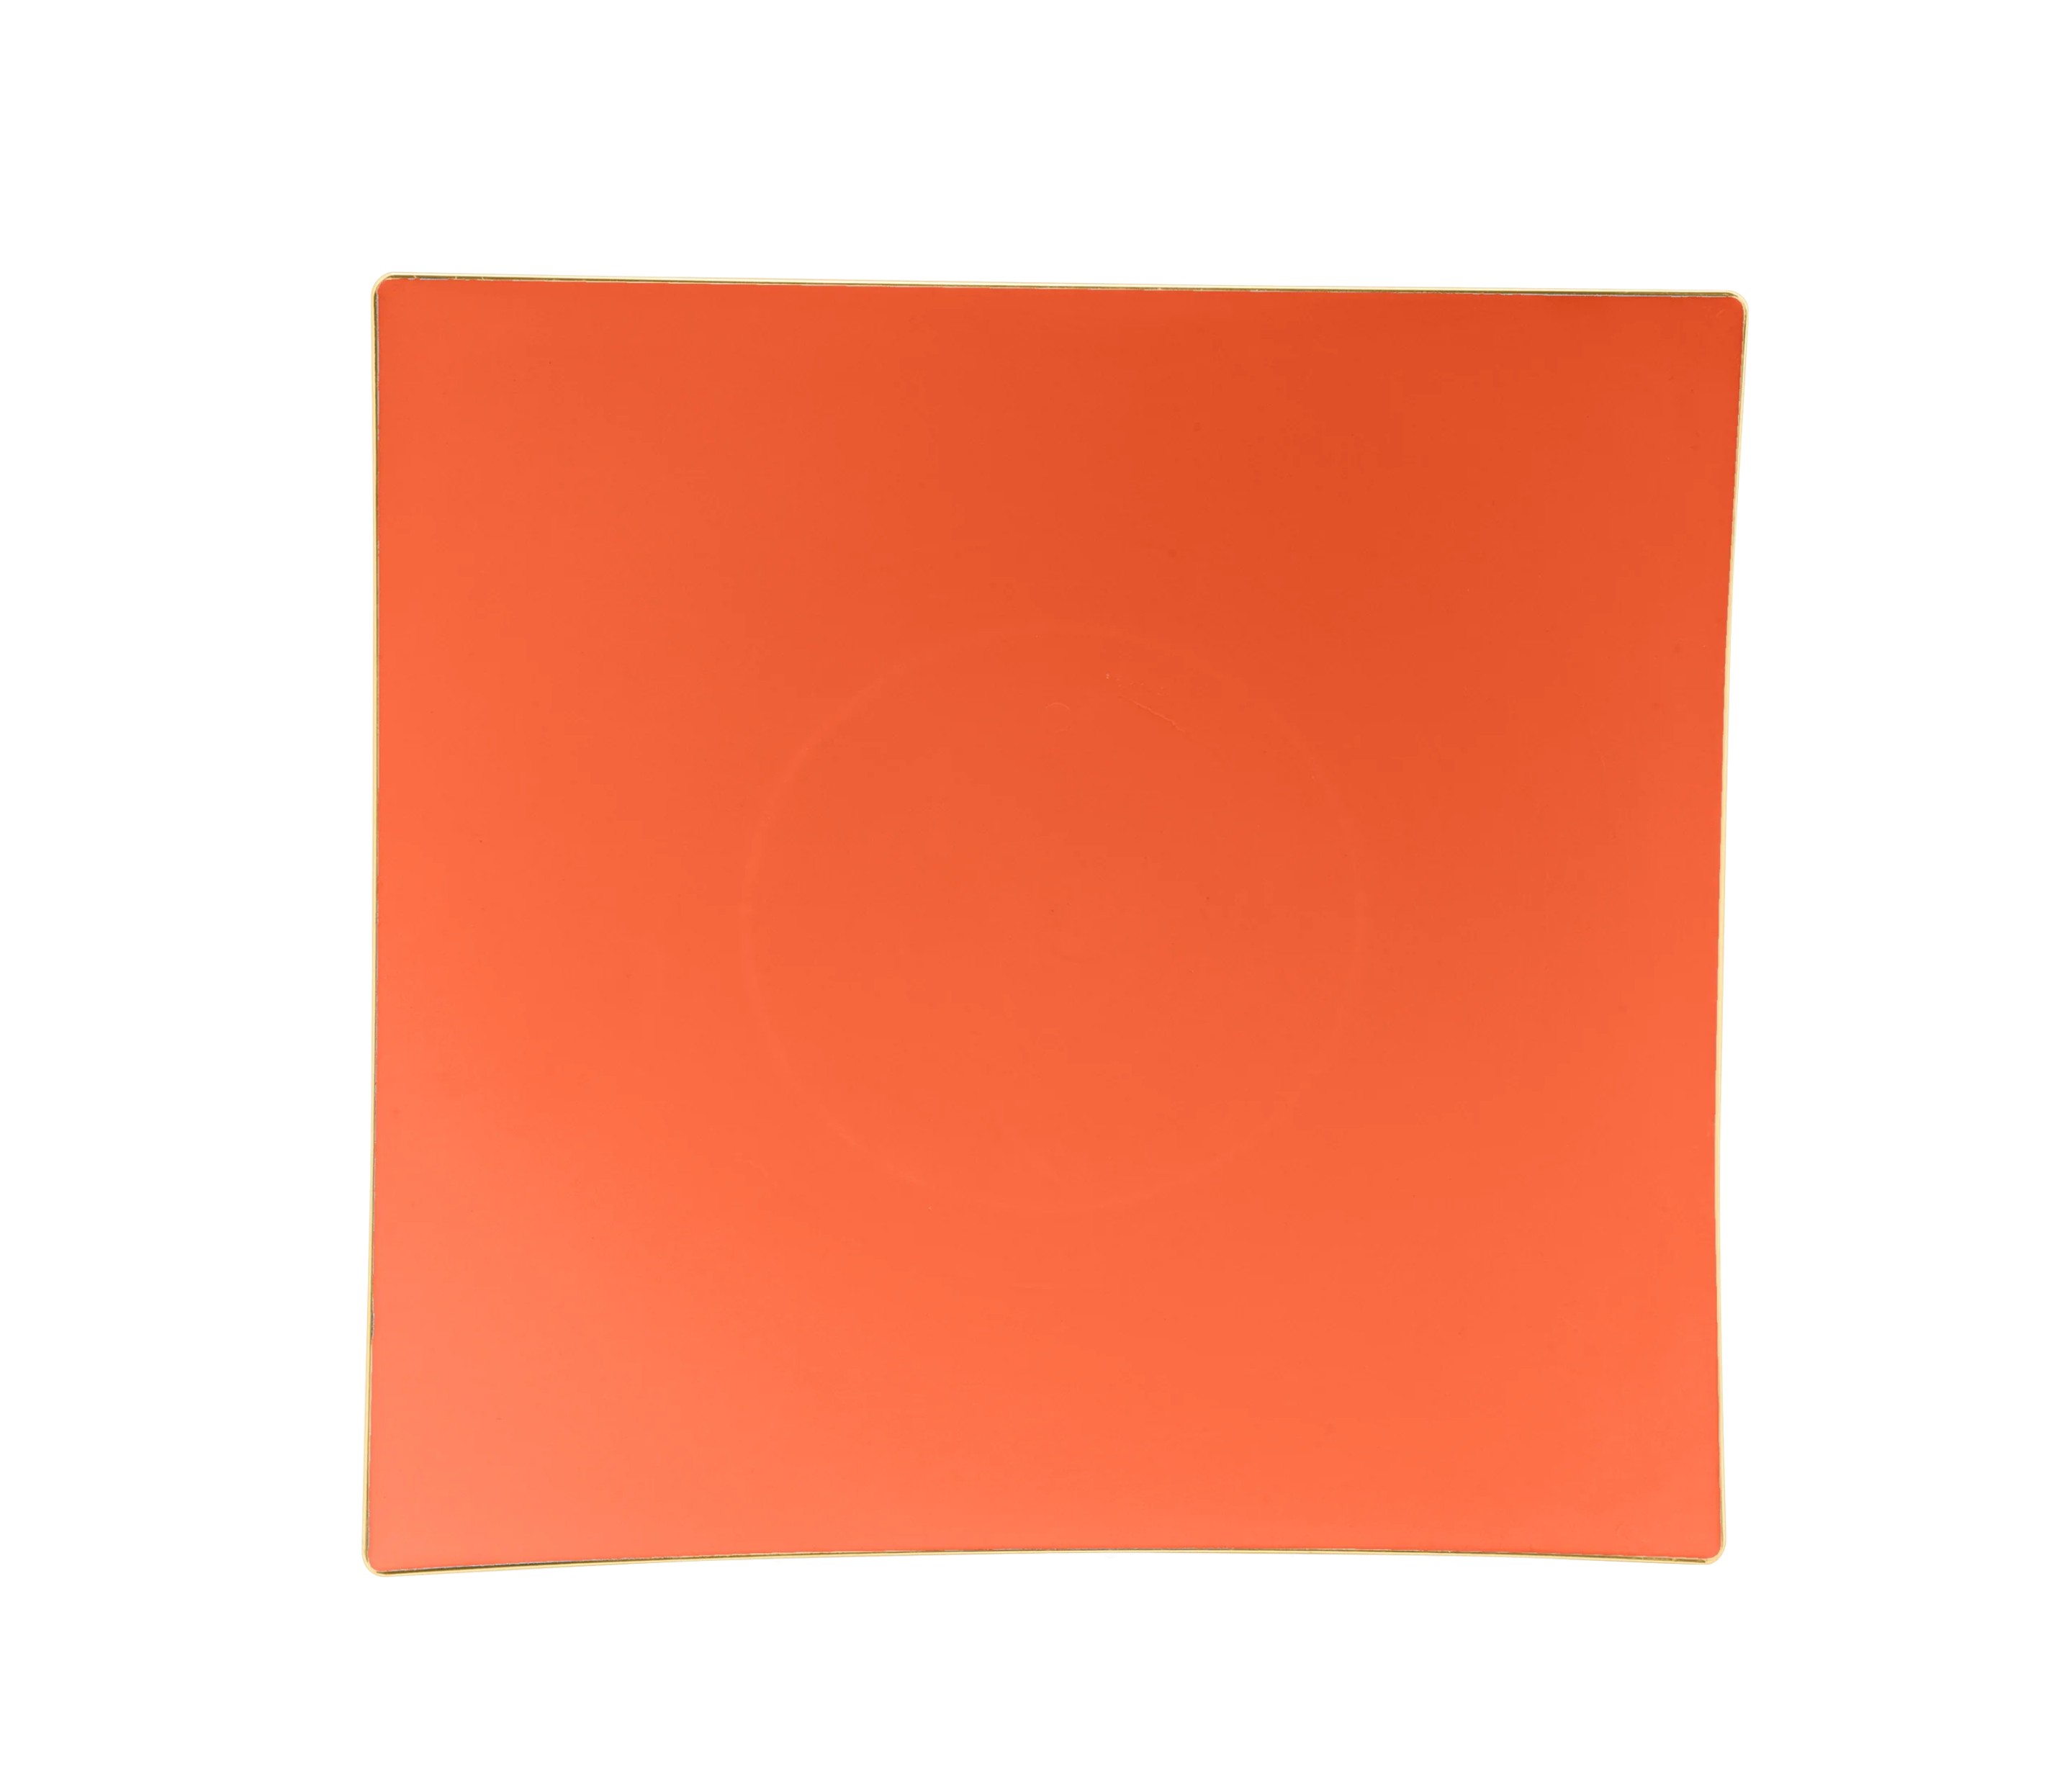 Luxe Party Orange Gold Rim Square Appetizer Plates 8" - 10 pcs